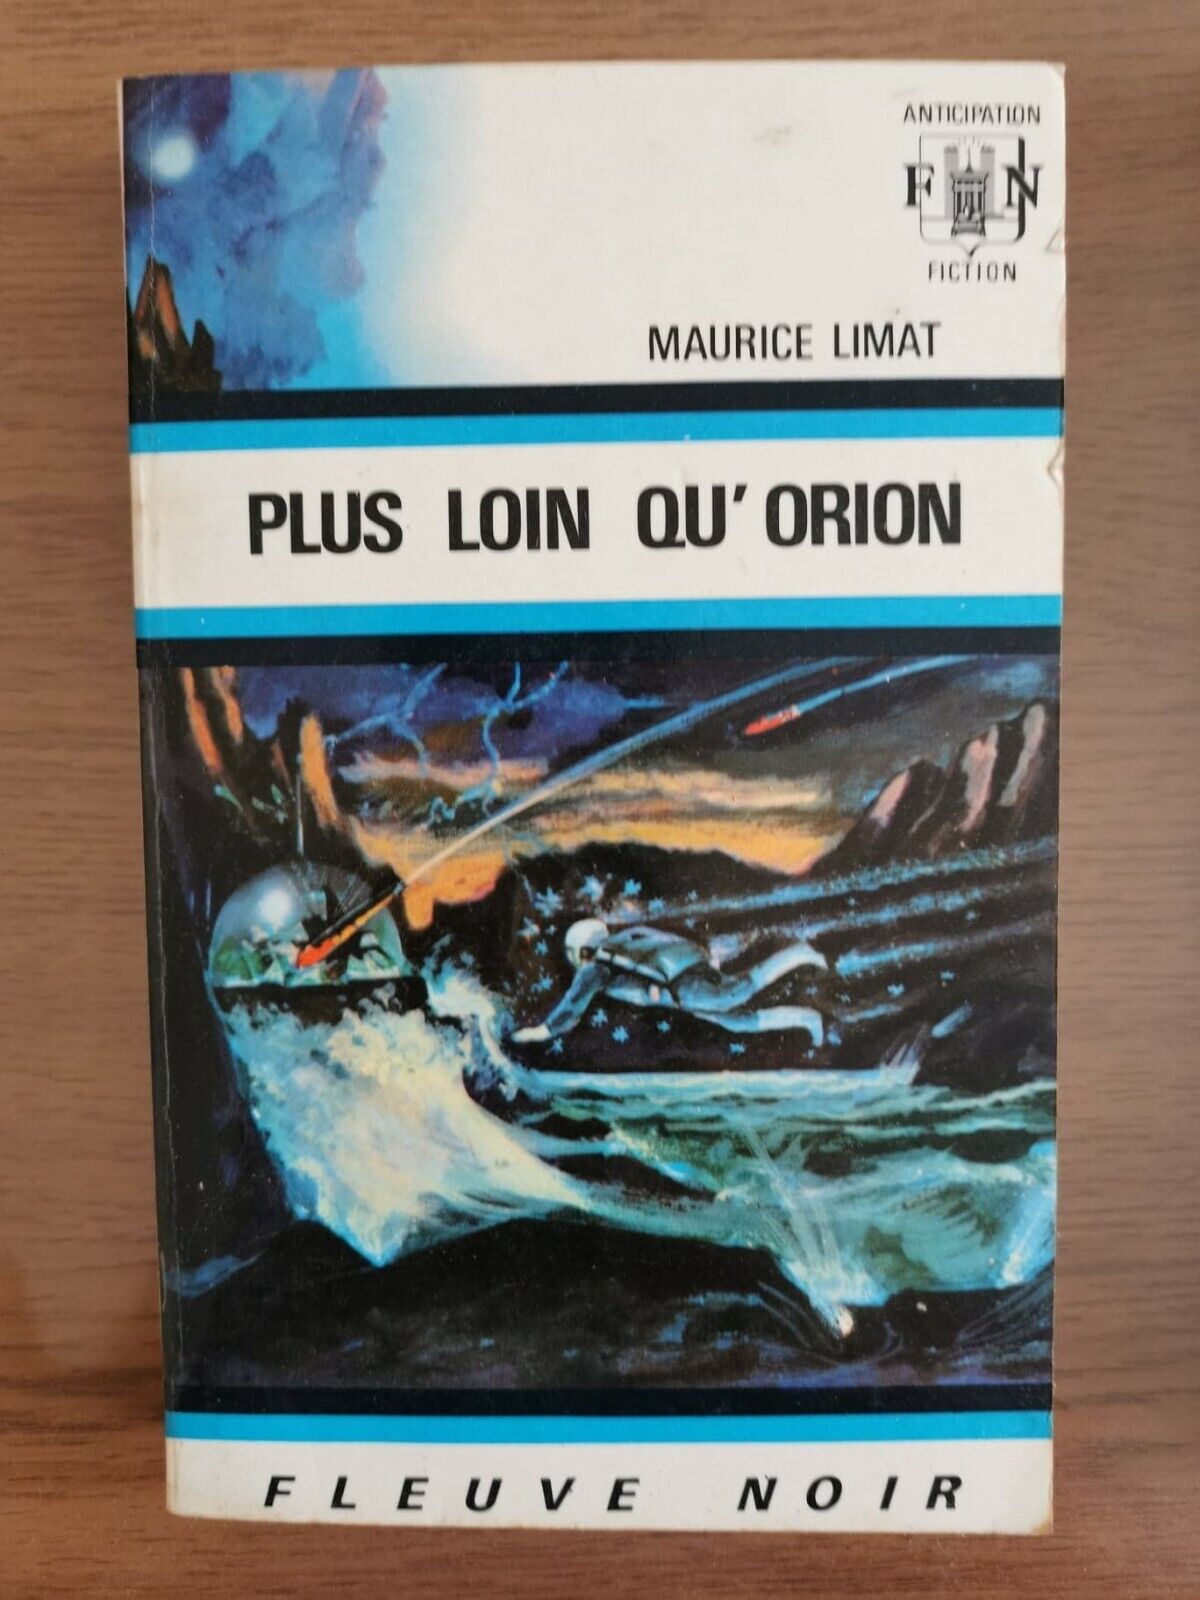 Plus loin qu' orion - M. Limat - Fleuve Noir - 1970 - AR